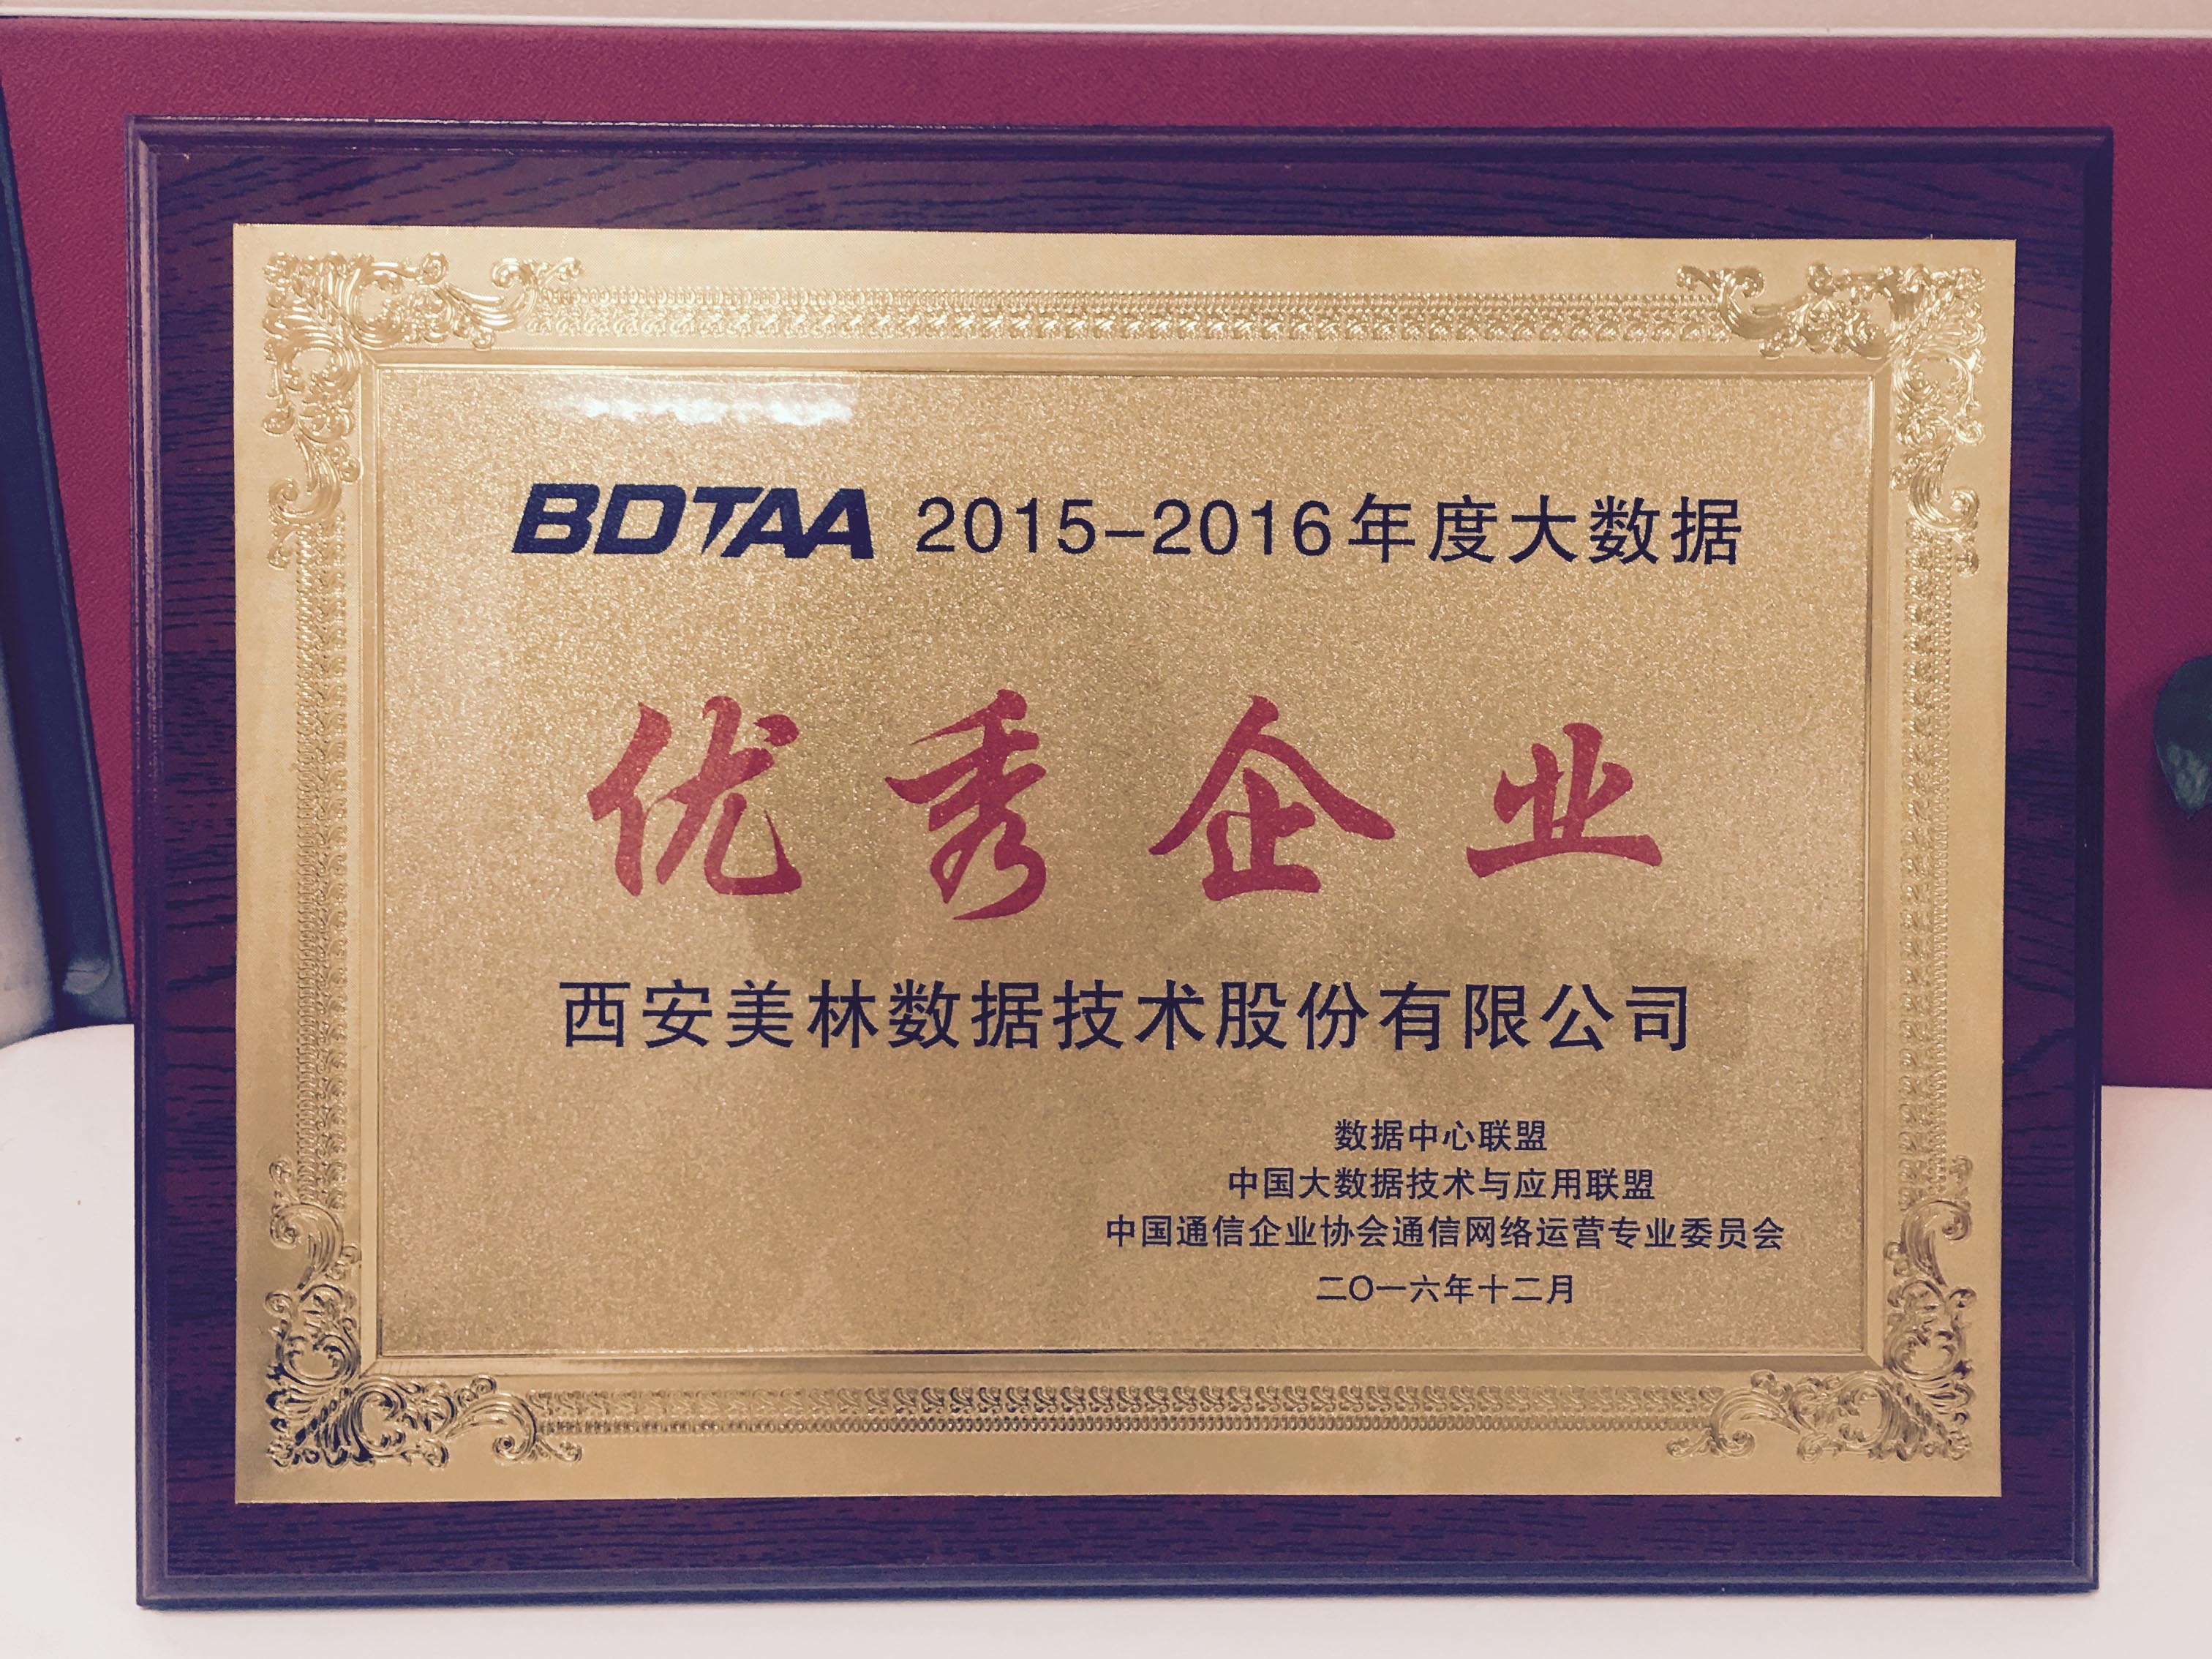 开年大吉|美林数据荣获“2015-2016年度中国大数据优秀企业”奖